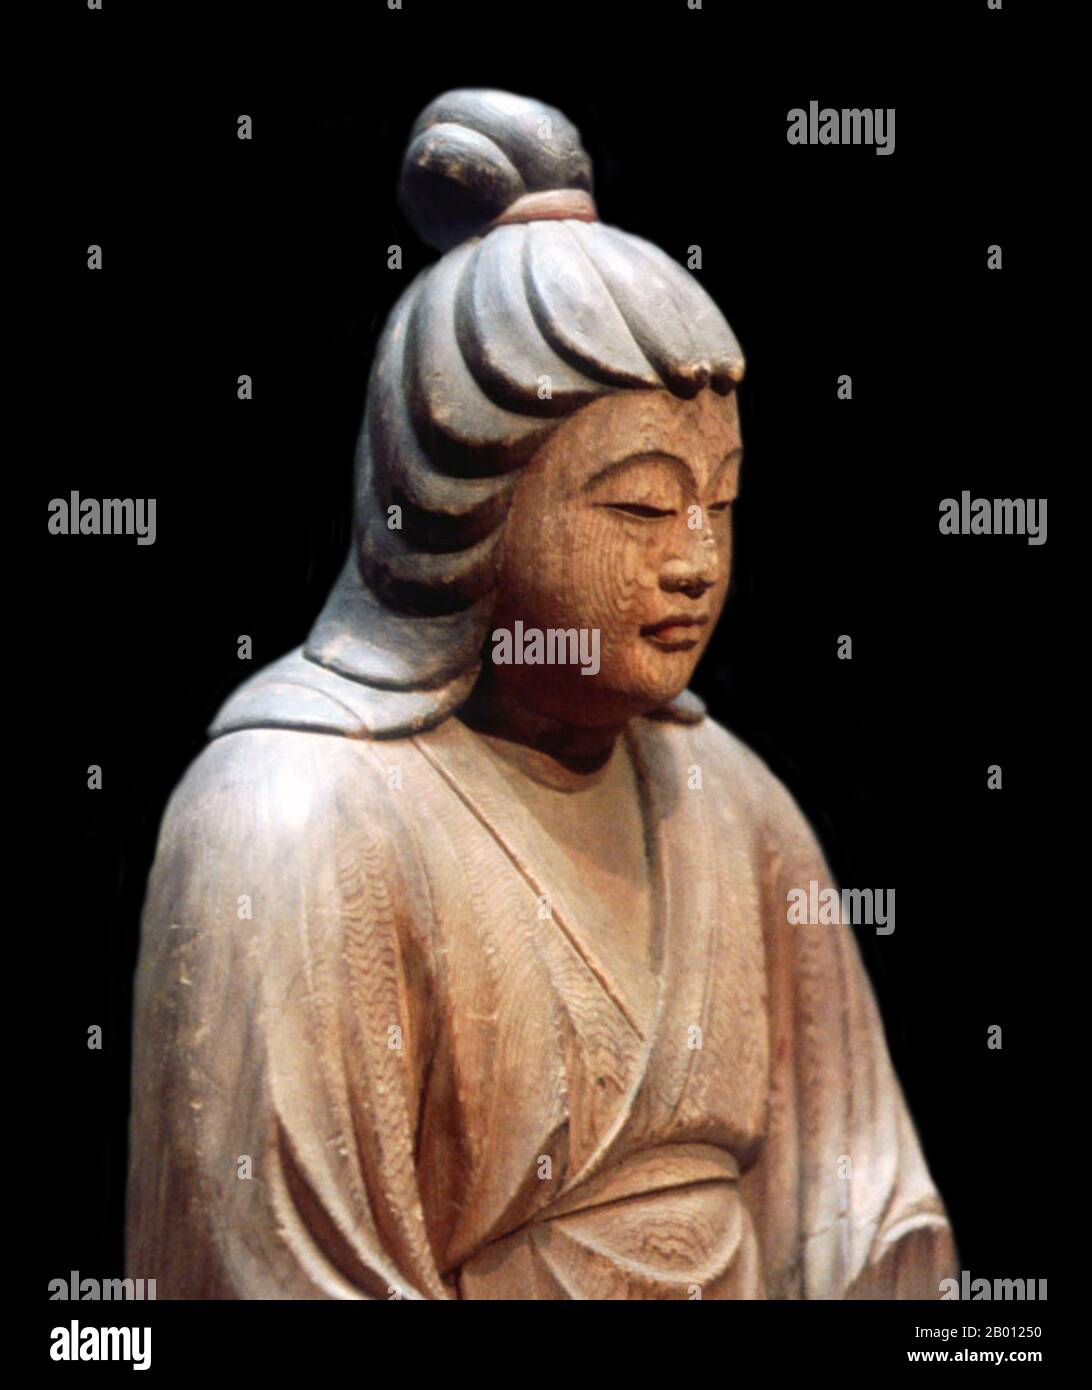 Japan: Kaiserin Jingū (r. 209 - 269 CE). Holzschnitzerei von Ko-Kaku (fl. 14. Jahrhundert), Hatimangu-Schrein, Präfektur Shimane, c. 1326. Foto von Reiji Yamashina (CC BY-SA 3.0 Lizenz). Kaiserin Jingū (c. 169-269 u.Z.) war Gemahlin von Kaiser Chuai und diente als Regentin vom Zeitpunkt des Todes ihres Mannes im Jahr 209 bis zum Thronbesteigung ihres Sohnes Kaiser Ōjin im Jahr 269. Es können keine festen Termine für das Leben oder die Herrschaft dieser Figur angegeben werden. Jingū wird von Historikern wegen des Mangels an Informationen über sie als eine 'legendäre' Figur angesehen. Der Legende nach führte sie eine Invasion Koreas an und kehrte siegreich zurück. Stockfoto